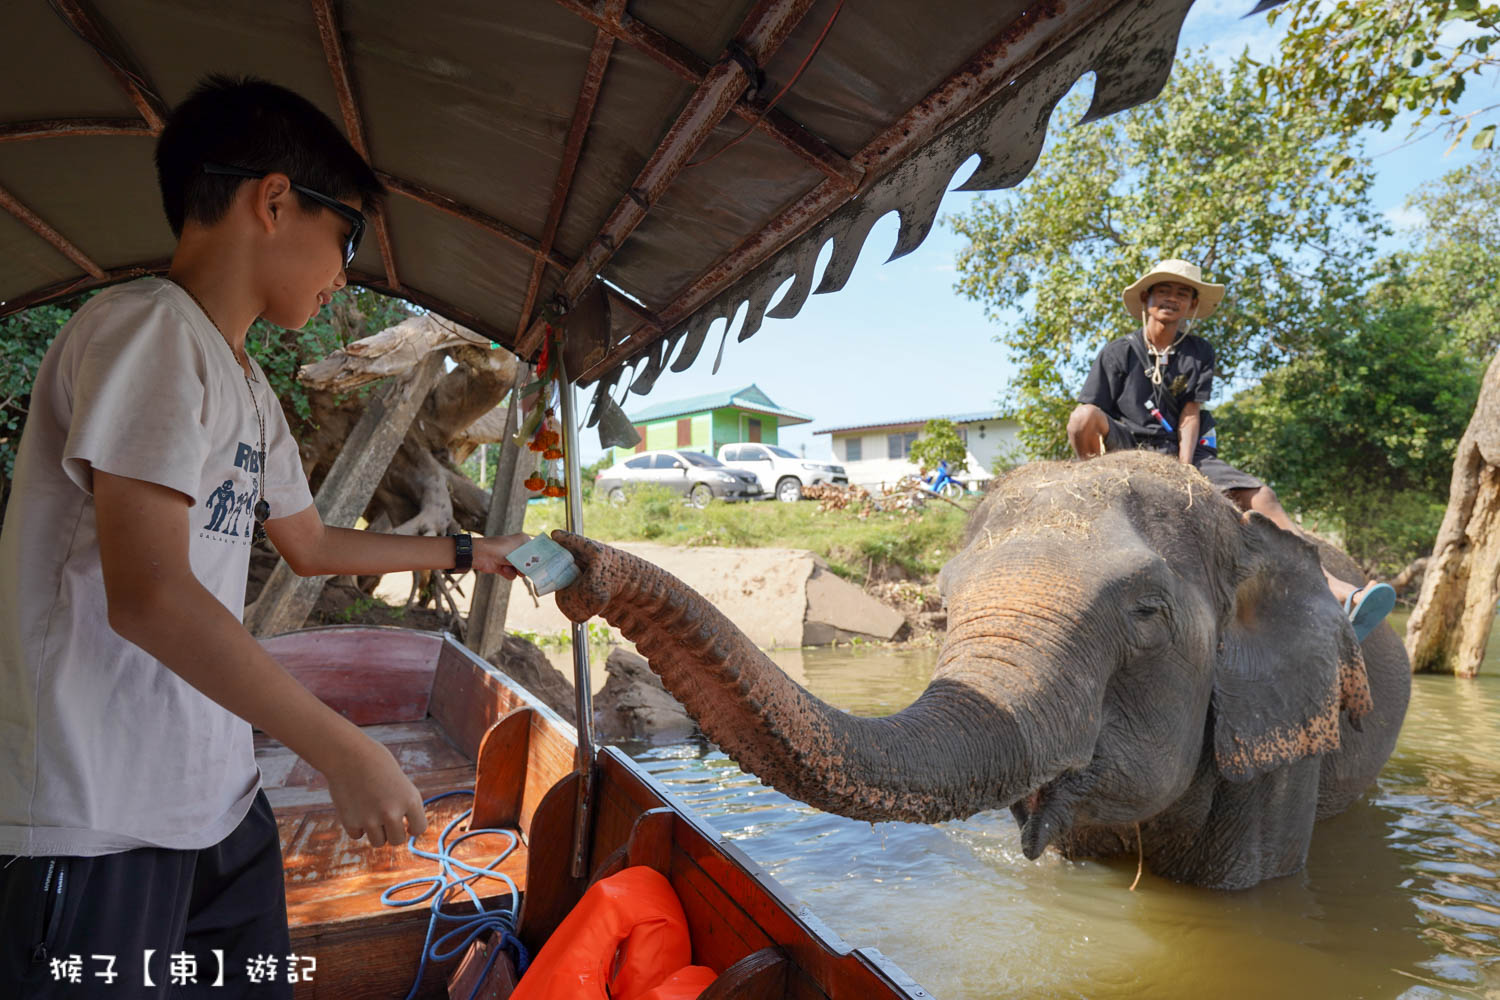 延伸閱讀：[泰國] 大城長尾船看大象洗澡 餵食大象 遊船招披耶河沿岸風光 超有趣 超驚喜